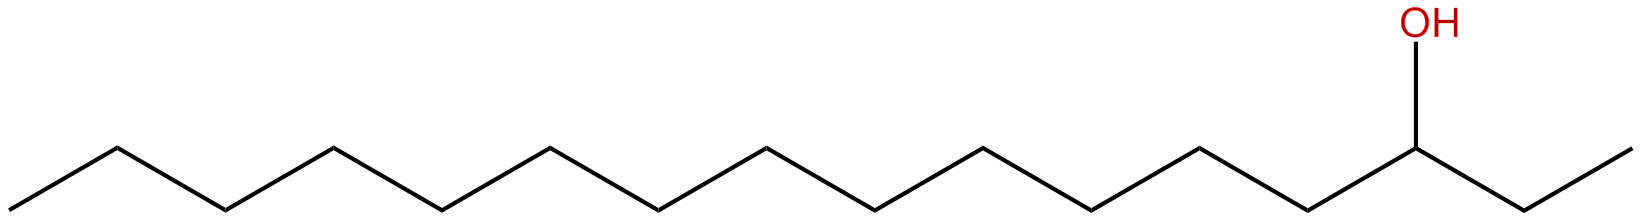 Image of 3-hexadecanol